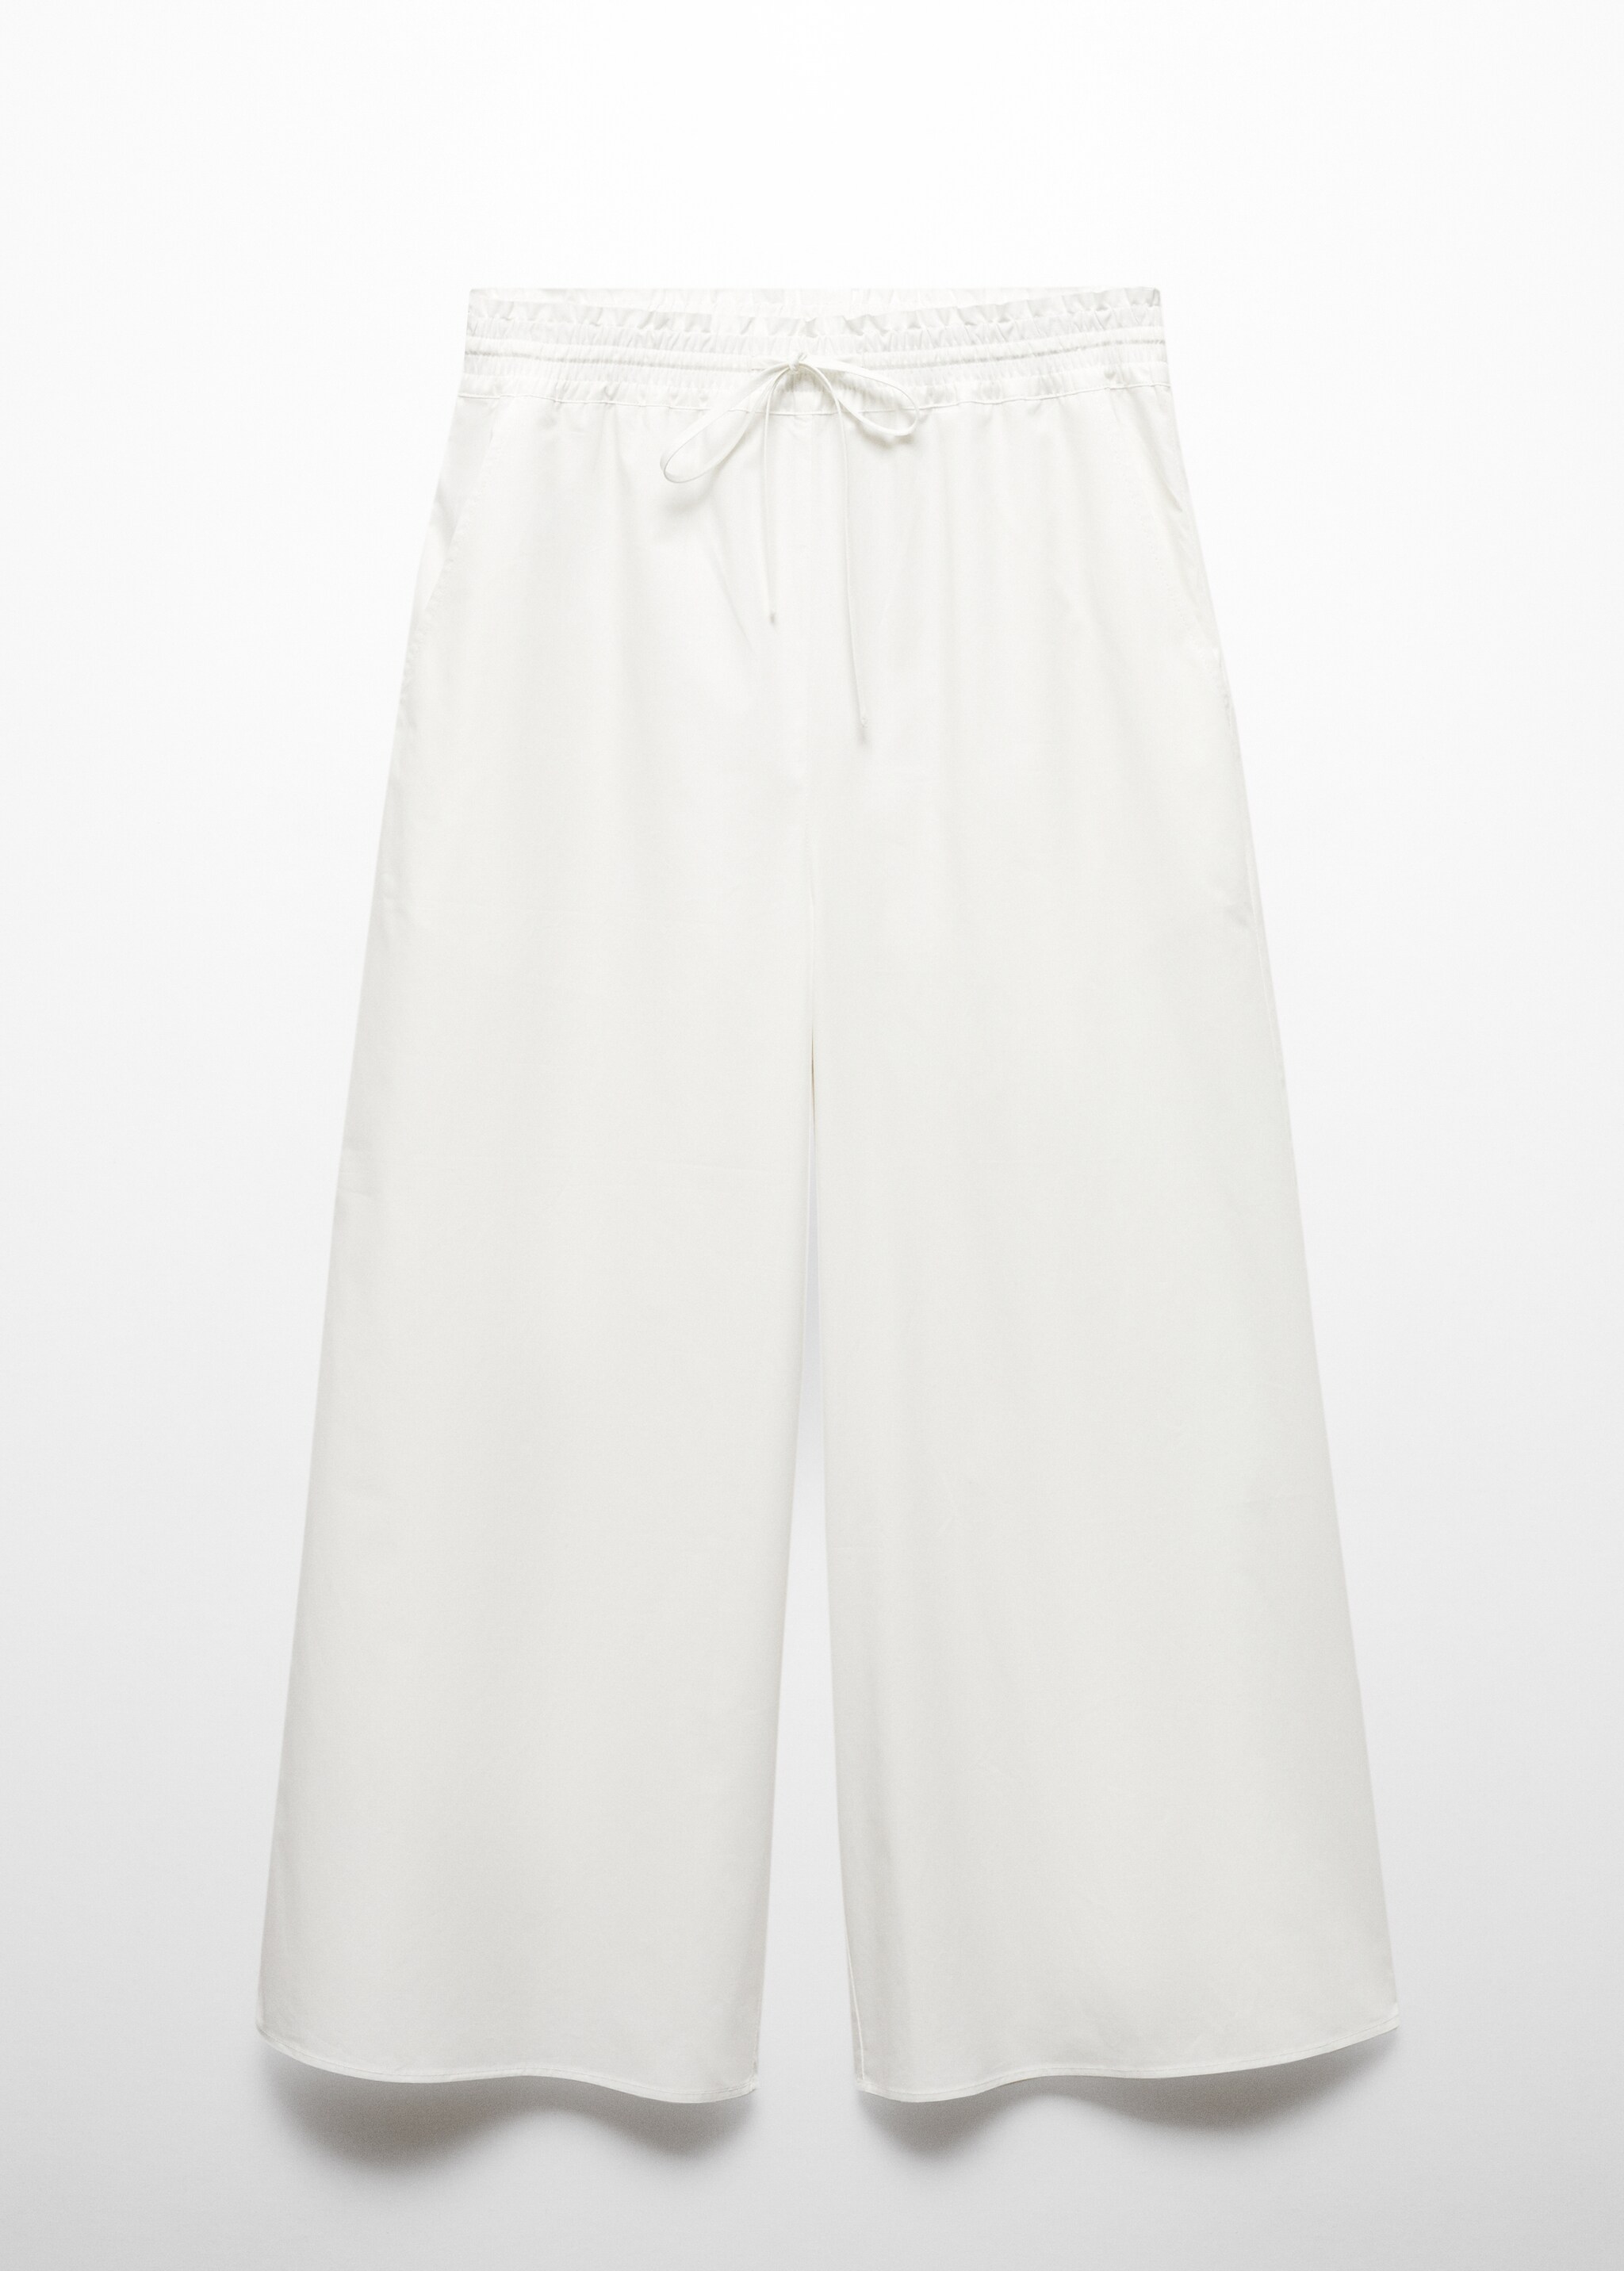 Pantalón culotte 100% algodón - Artículo sin modelo